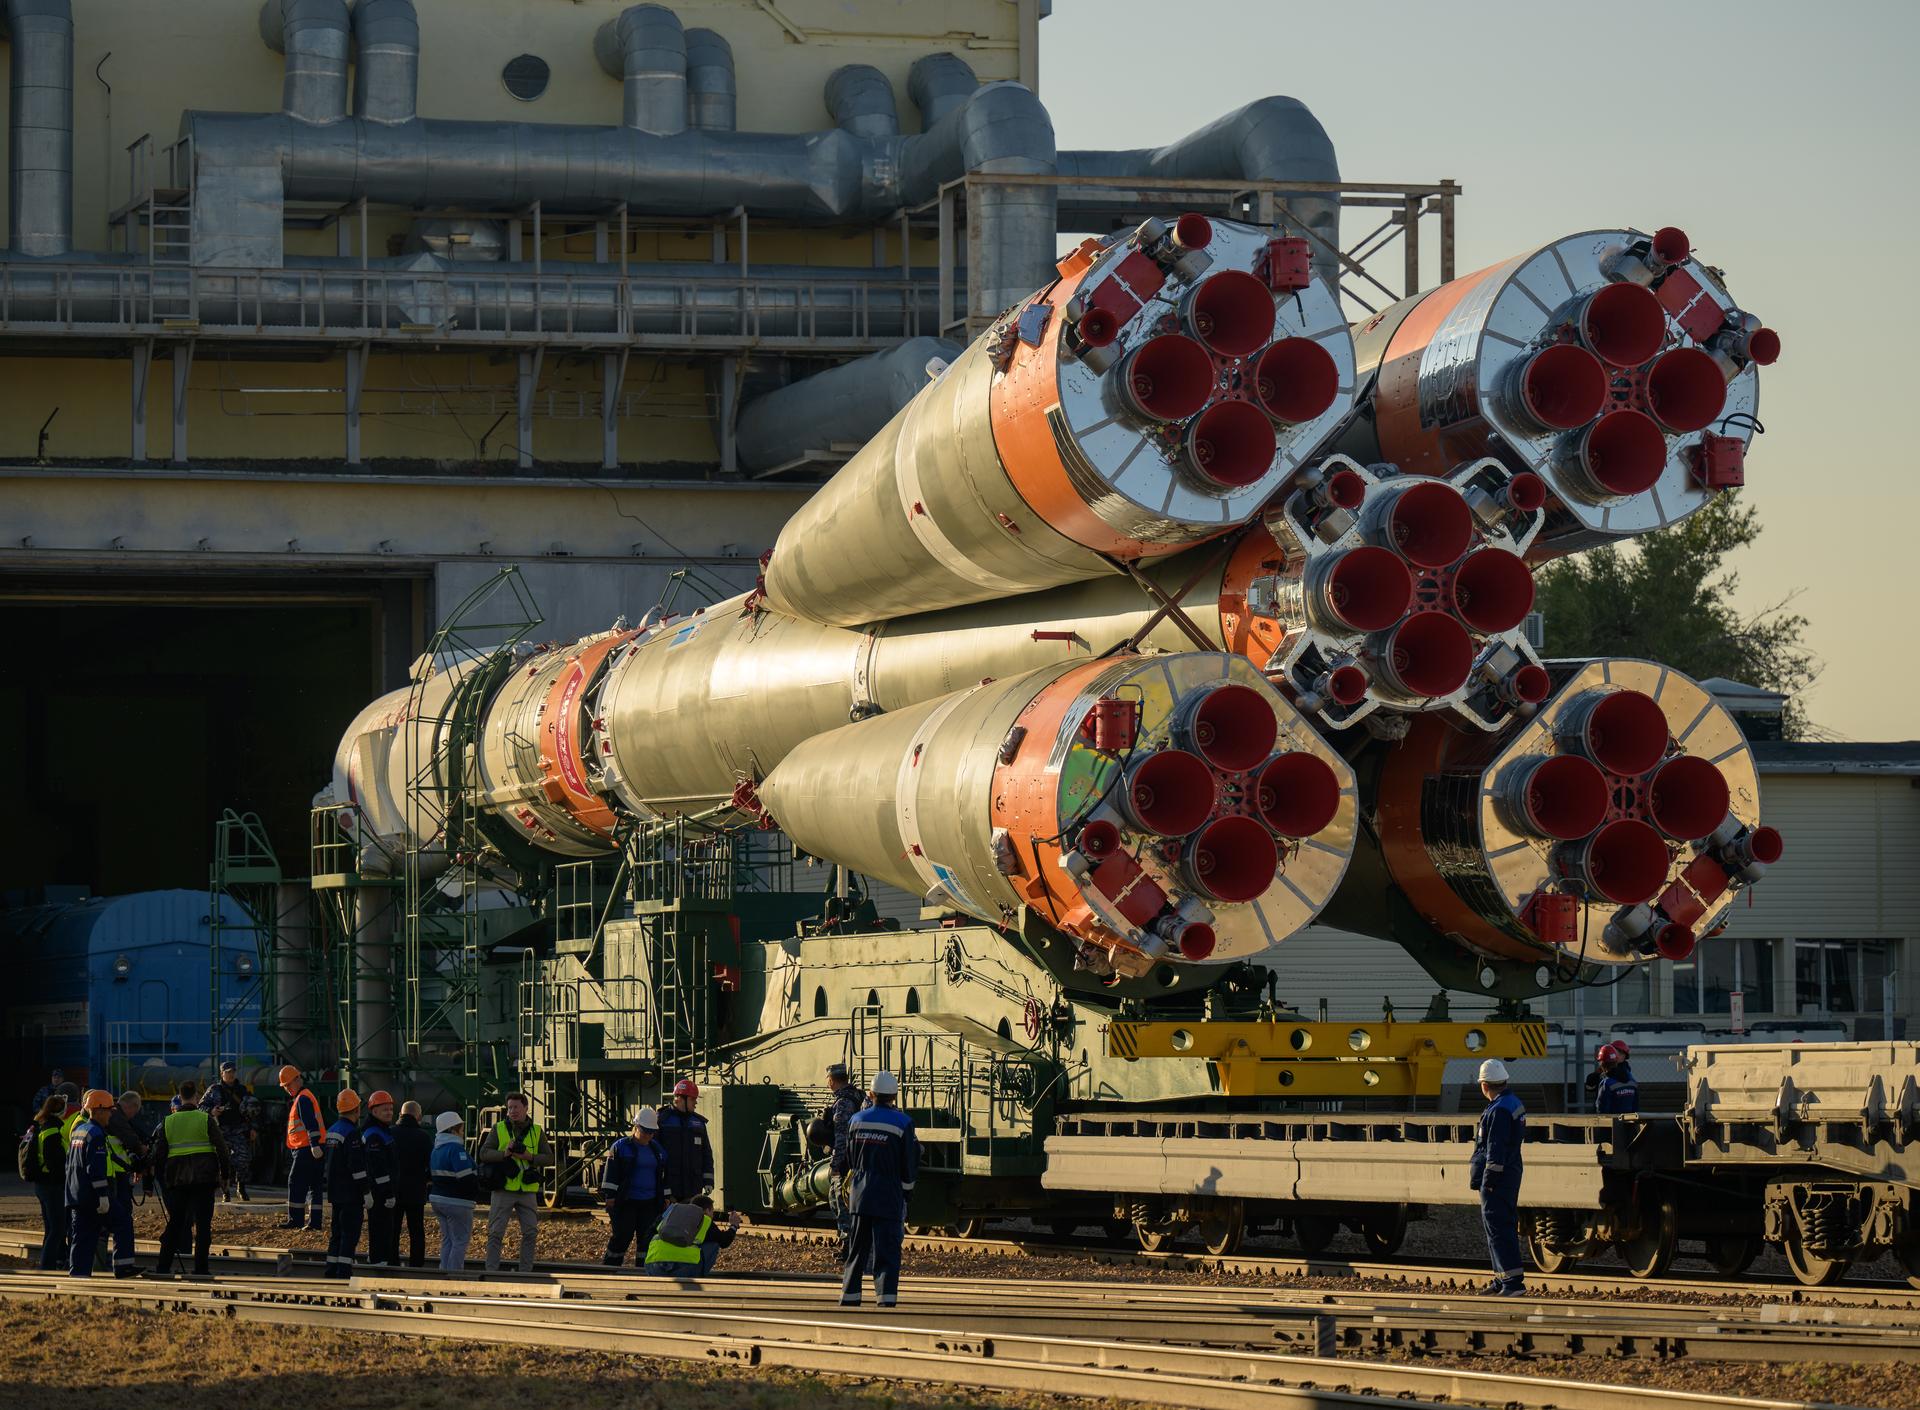 Bộ ảnh quyền lực: Nga nâng tên lửa Soyuz lên bệ, chuẩn bị chuyến bay lịch sử - Ảnh 1.